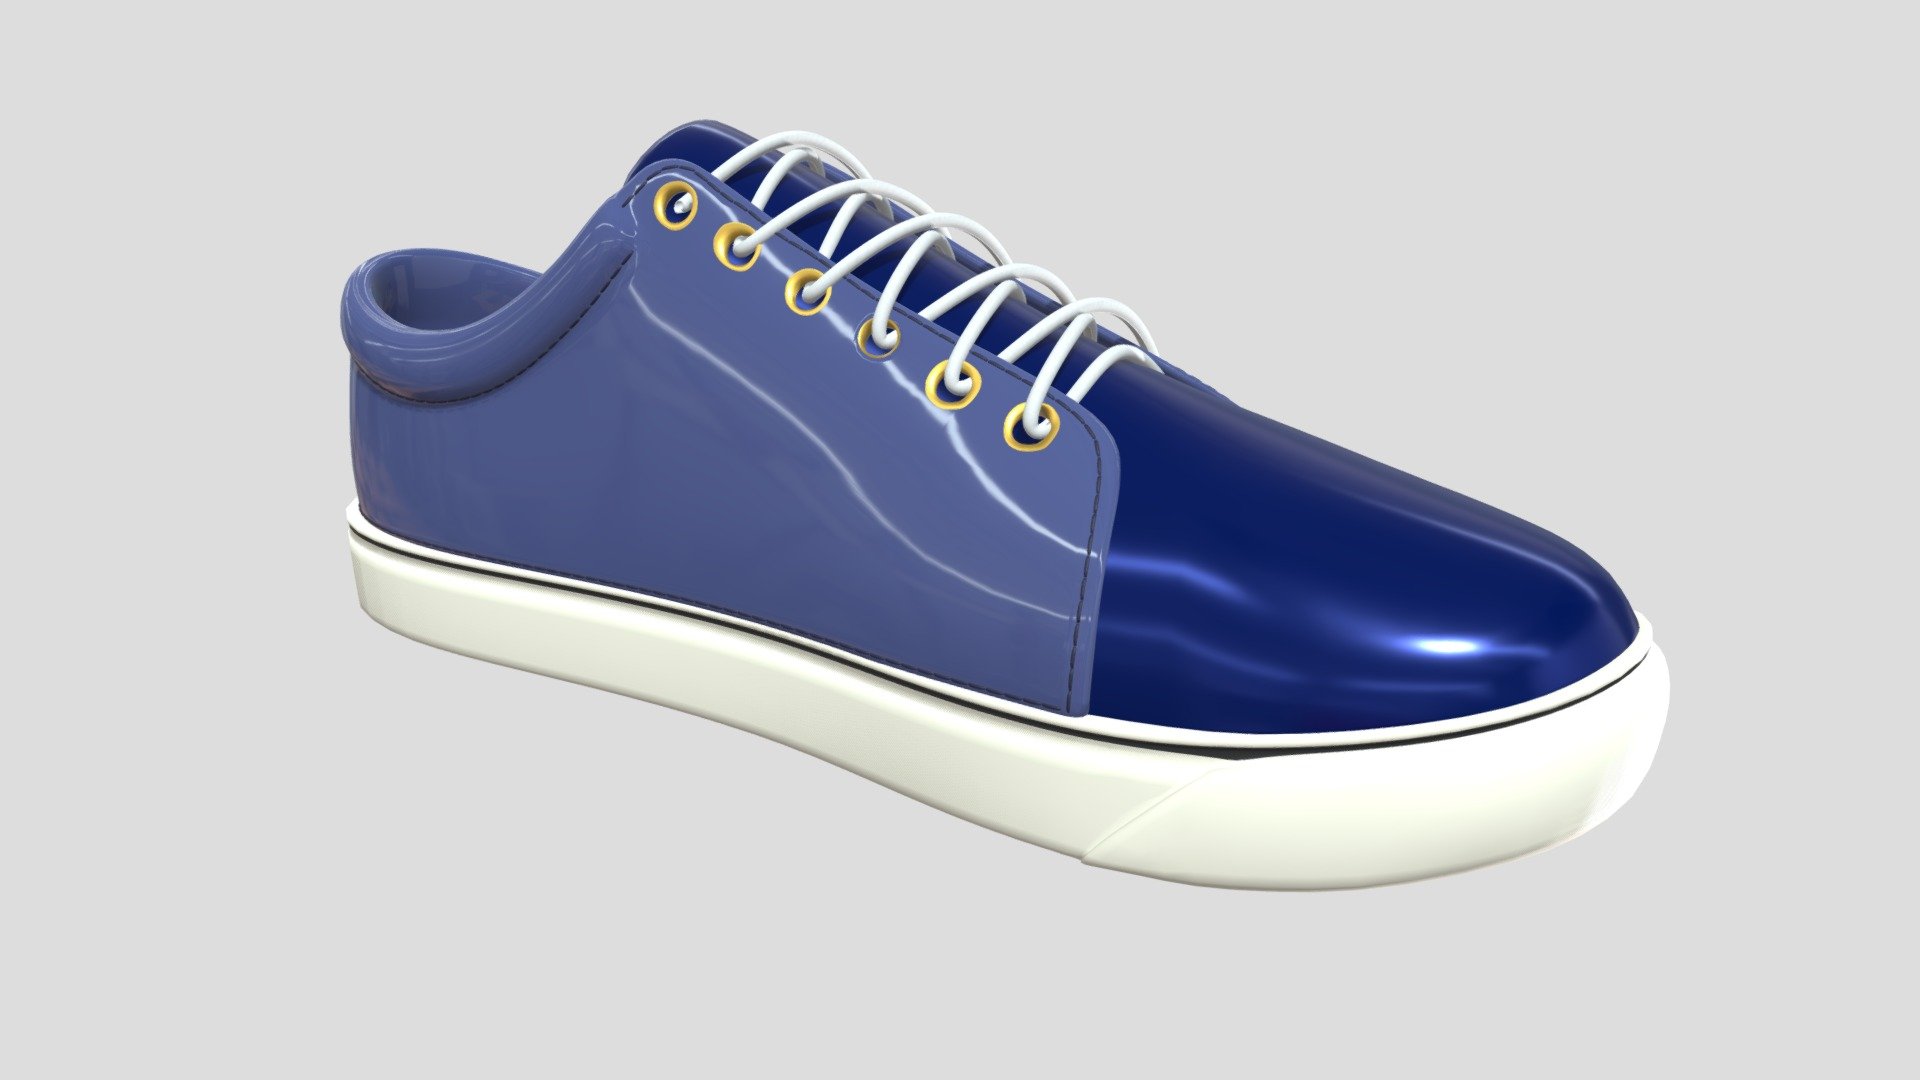 Sneakers_Modeling_v004 - 3D model by juuuhnnn (@khw1406) [b02b30d ...